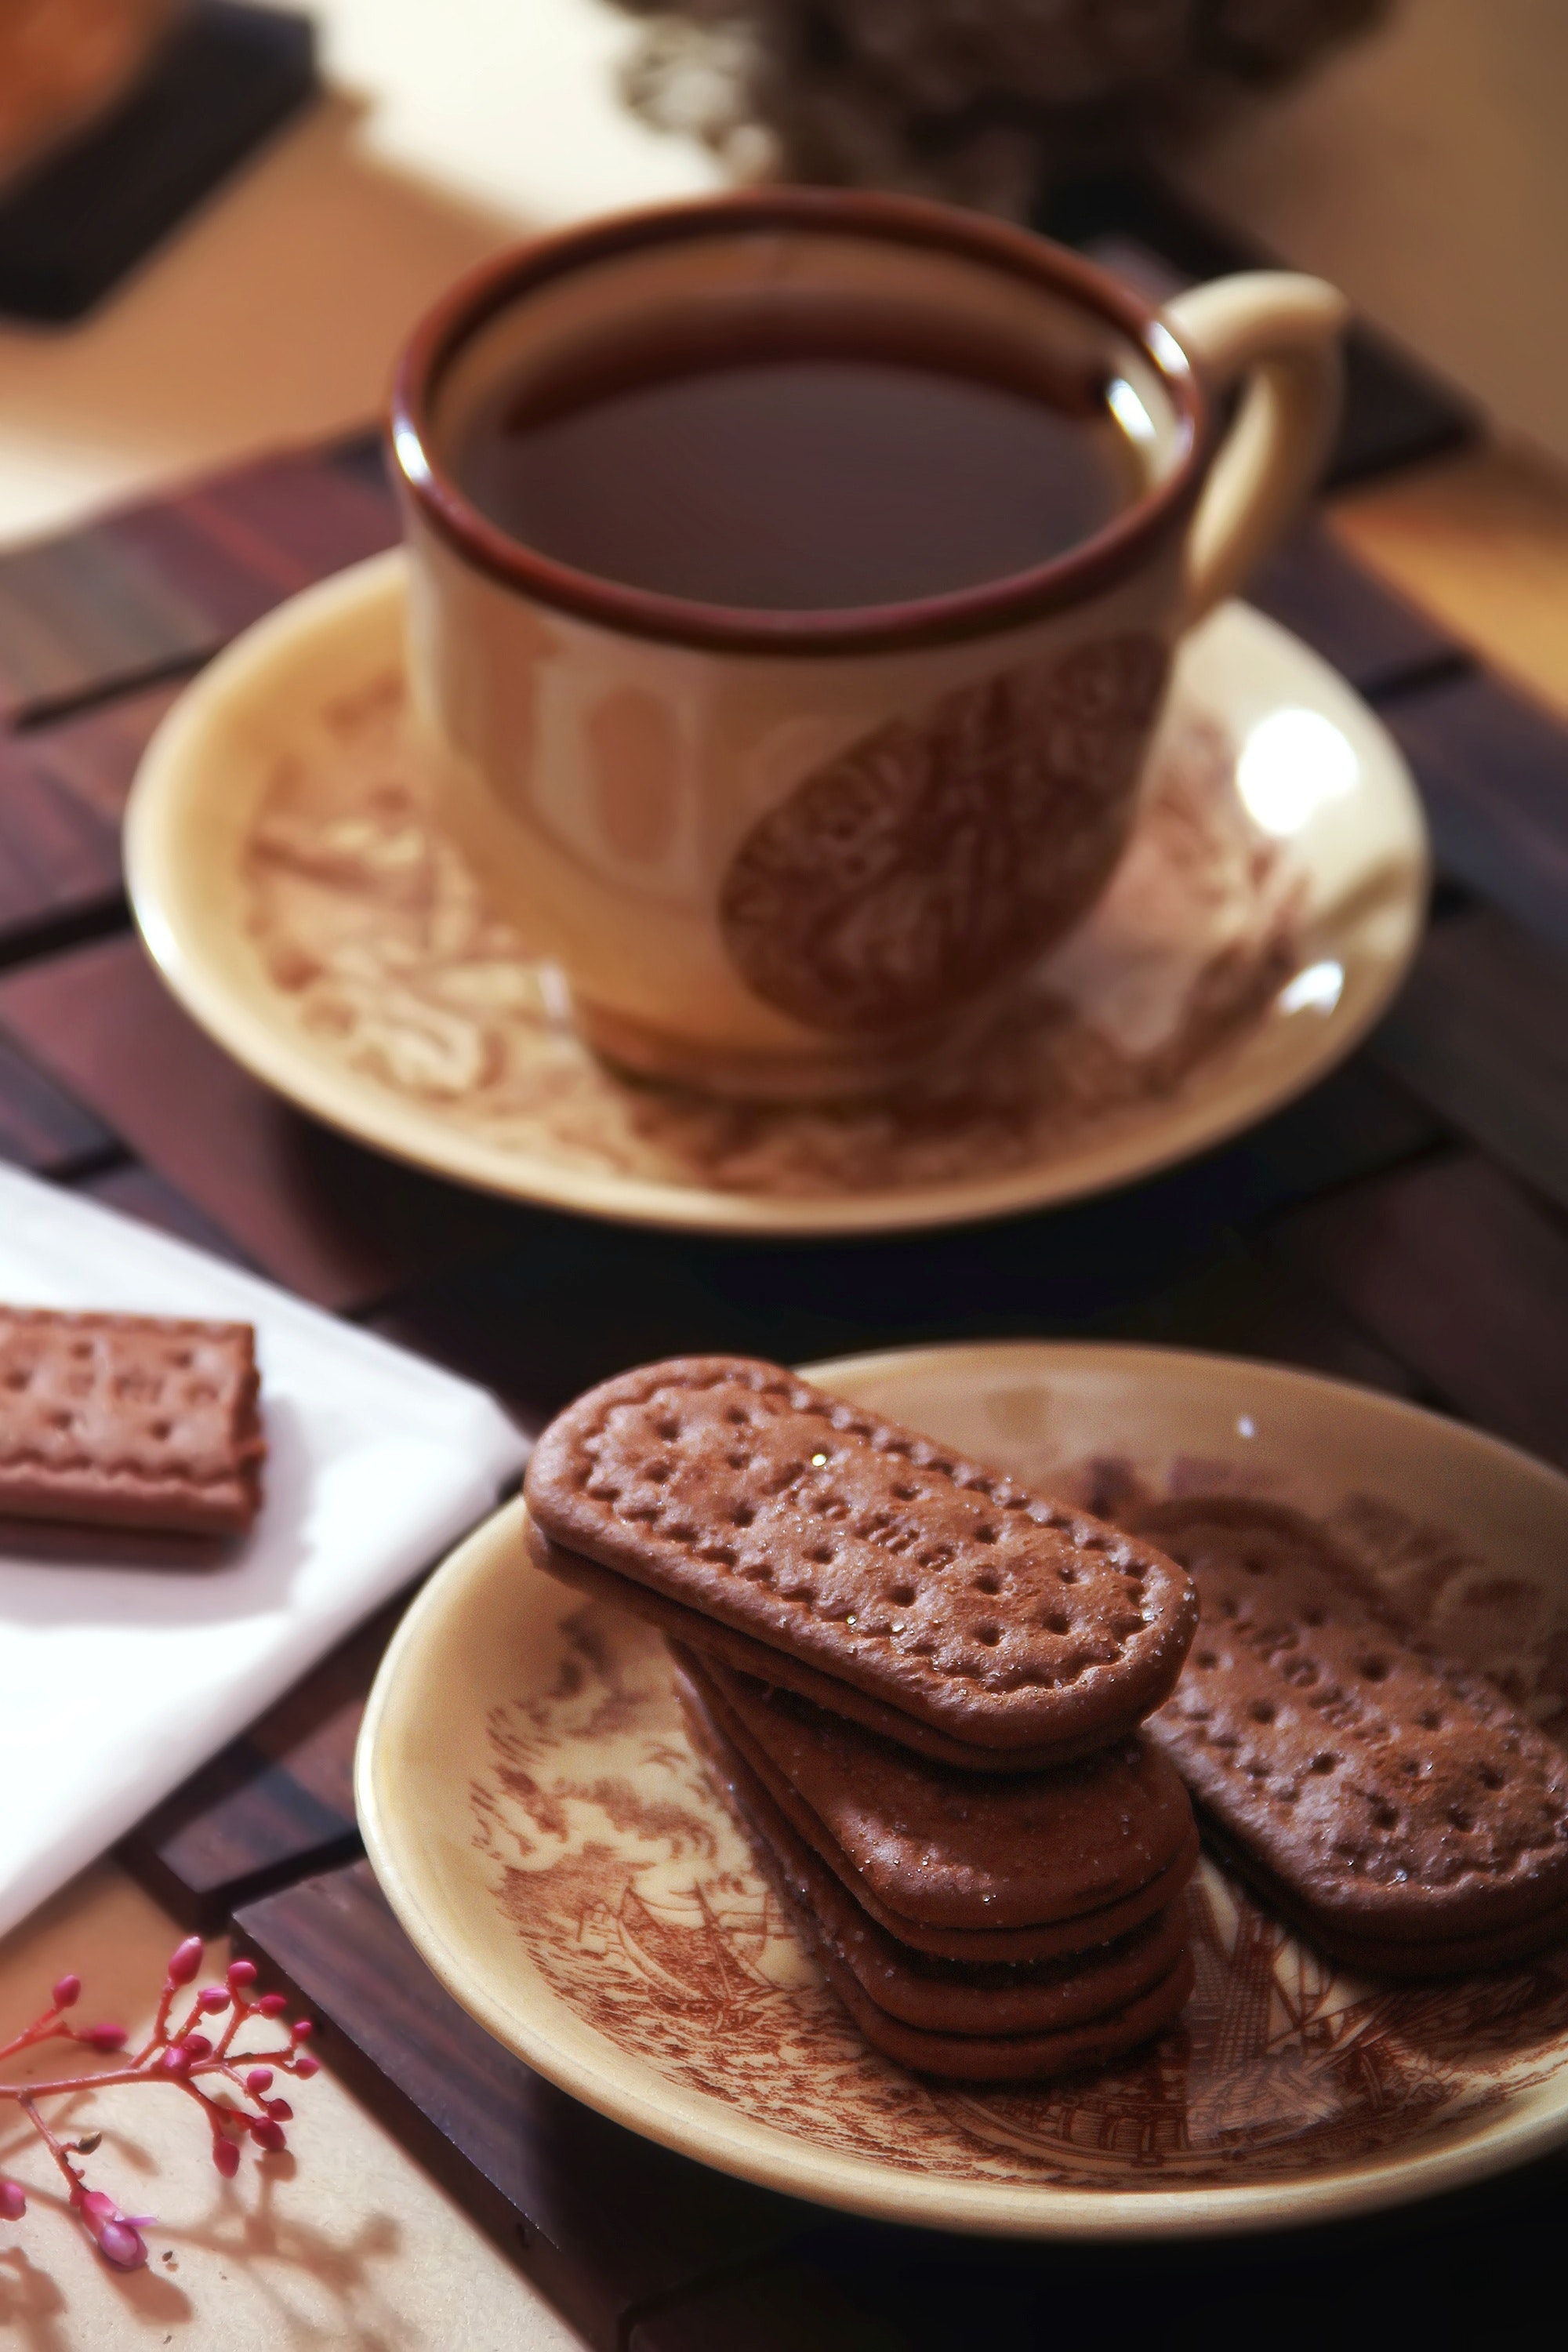 Chocolate nóng là những thức uống tốt cho sức khỏe